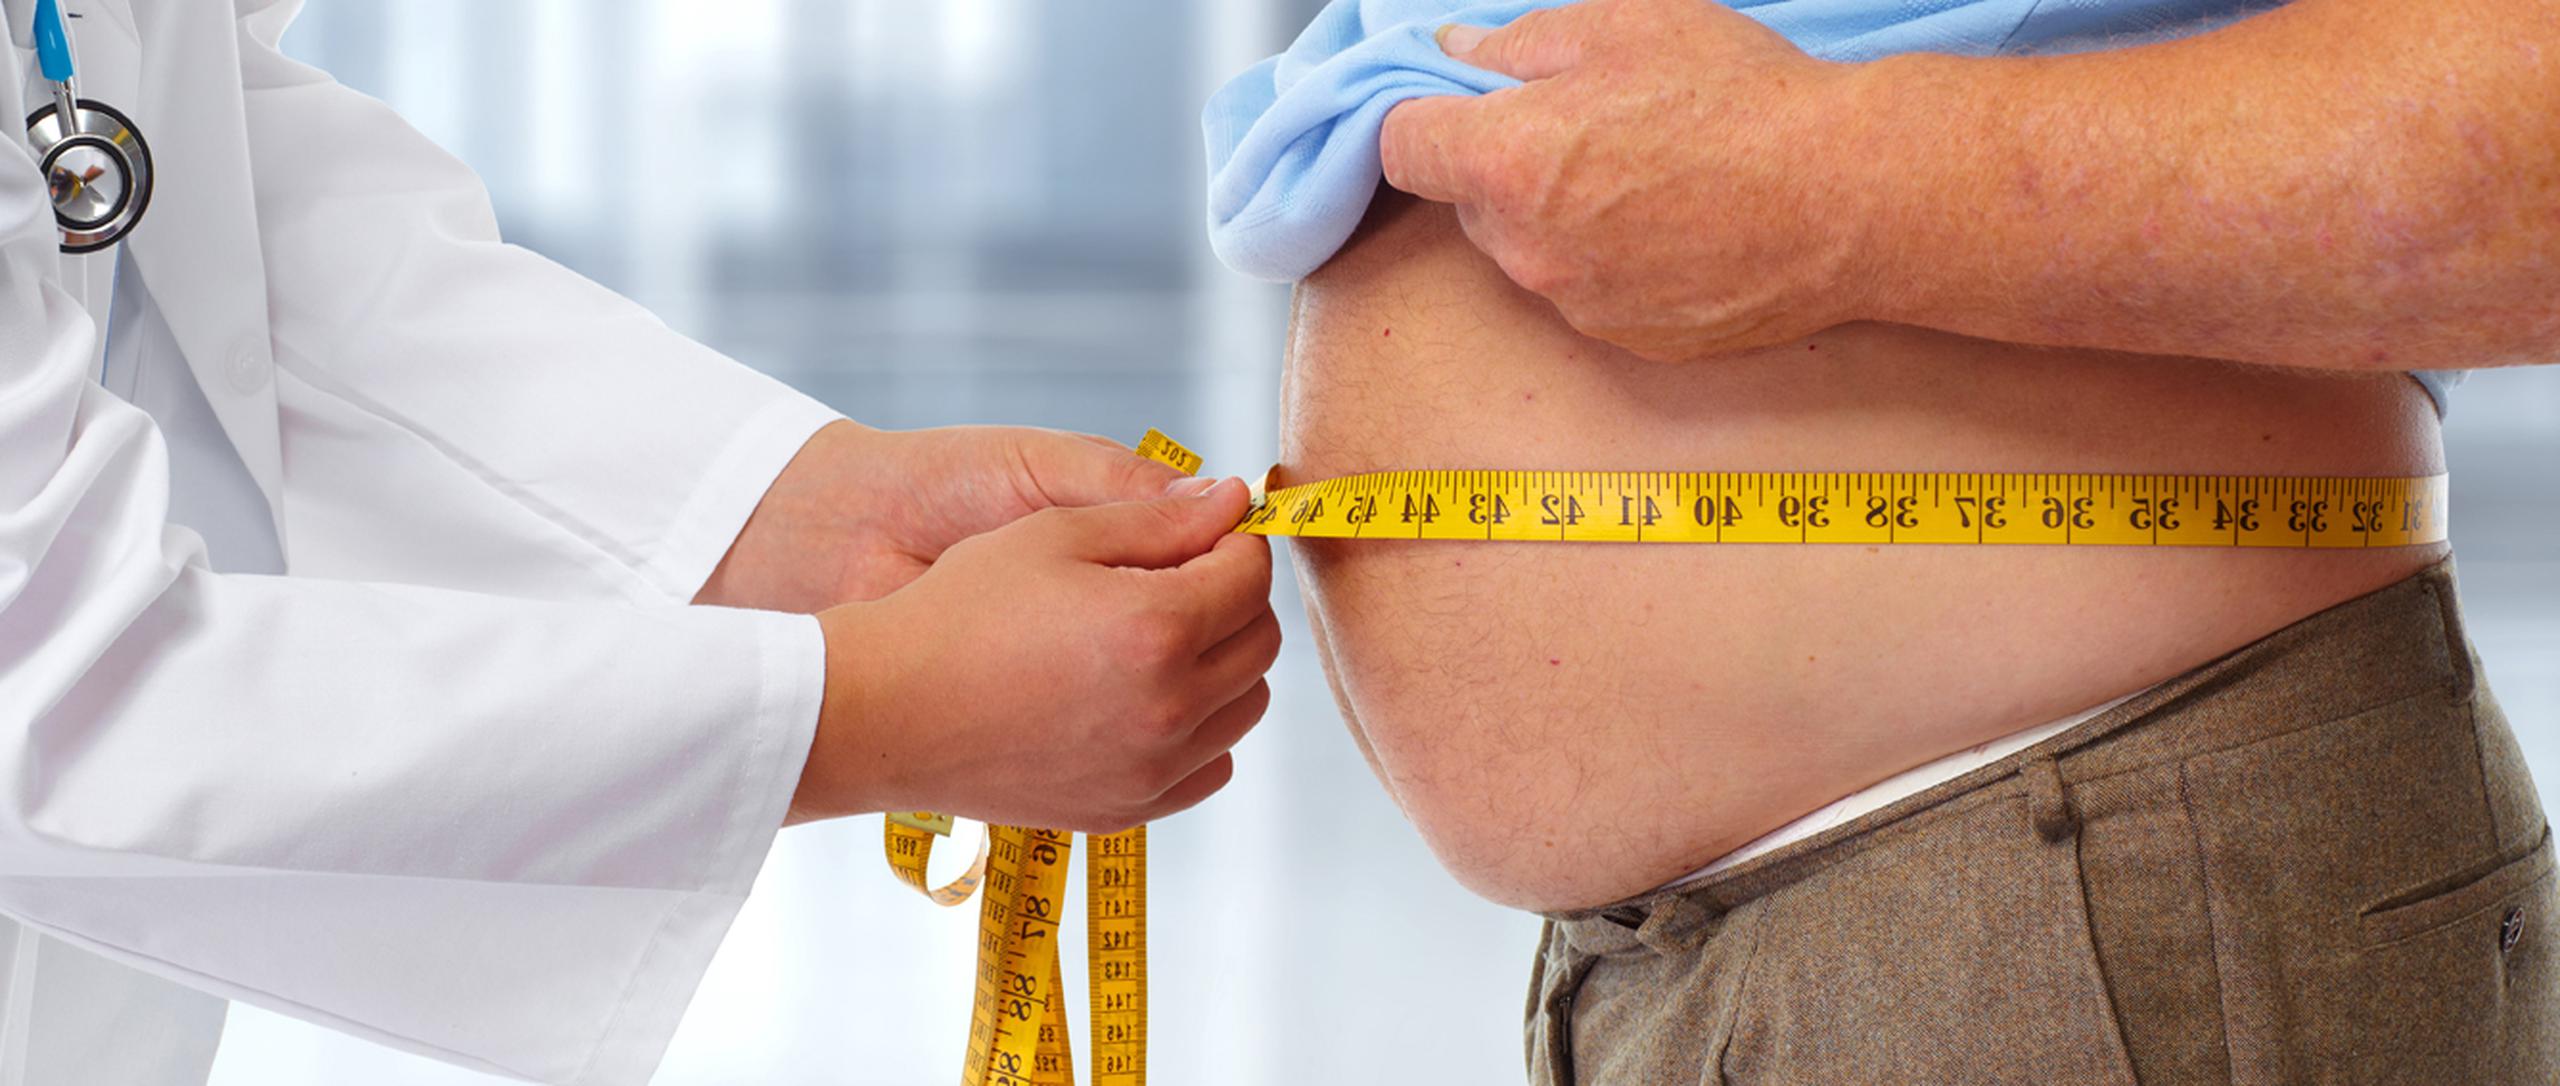 Los pacientes deben entender que llegar al peso deseado no es cuestión de uno o dos meses, sino que revertir la obesidad llevará tiempo. (Shutterstock)